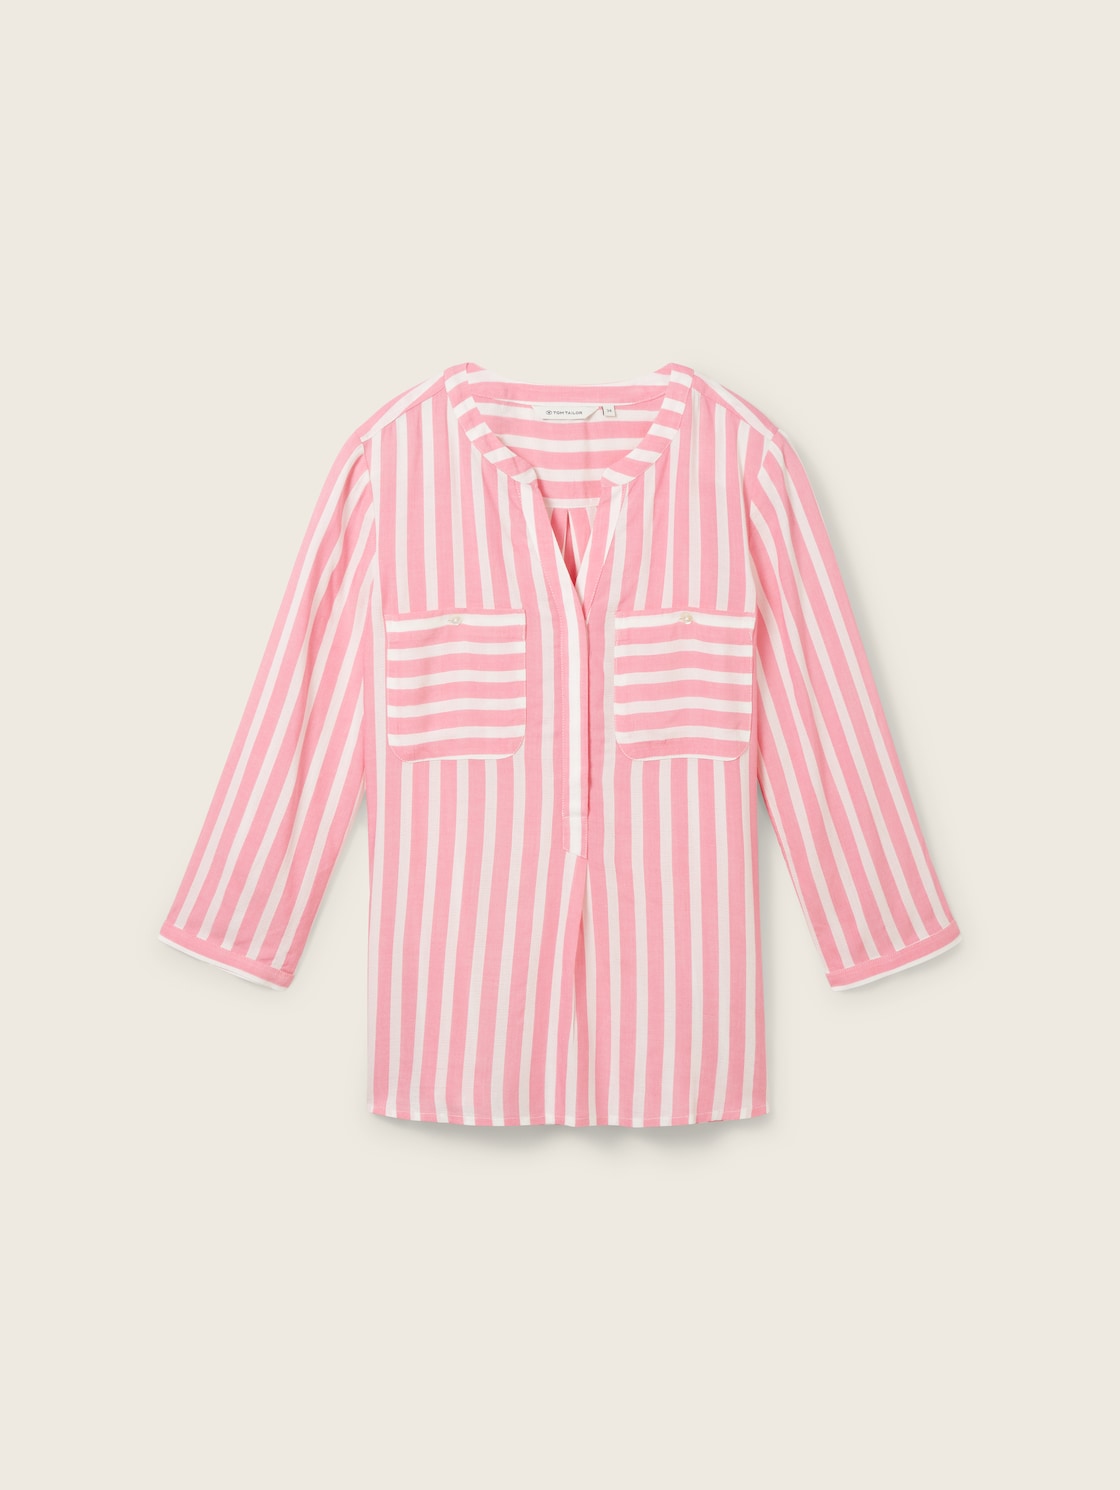 TOM TAILOR Damen Gestreifte Bluse mit Taschen, rosa, Streifenmuster, Gr. 44 von Tom Tailor